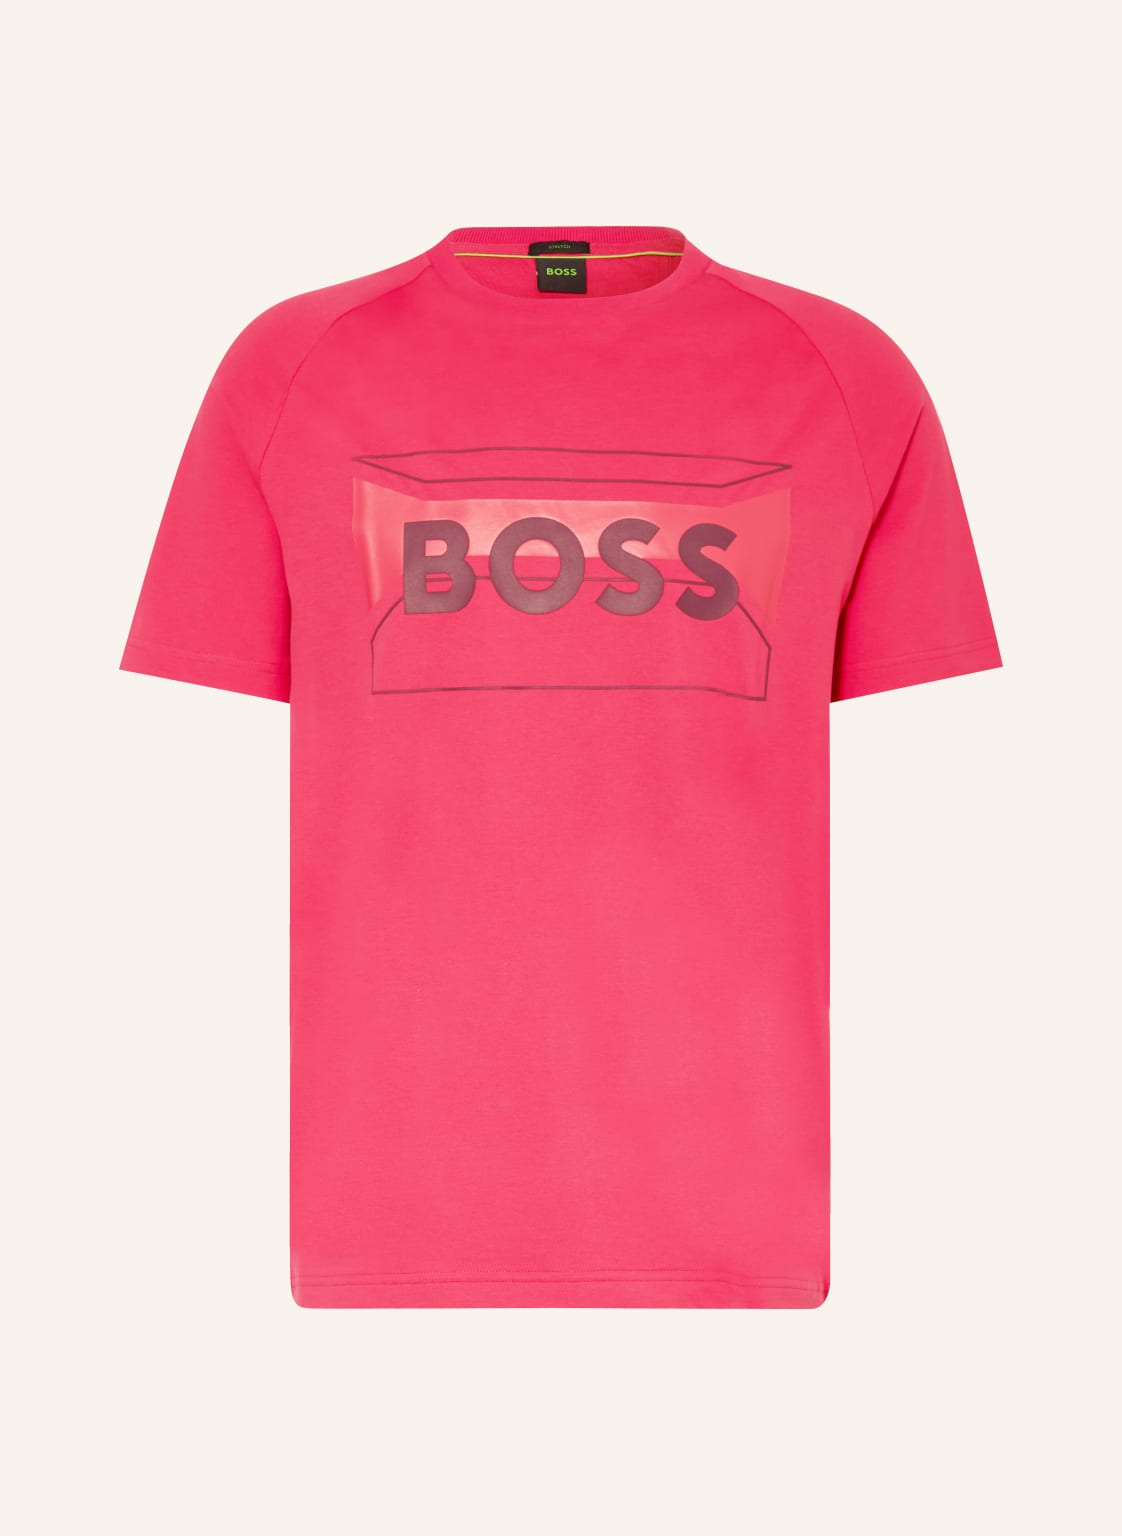 Boss T-Shirt pink von Boss